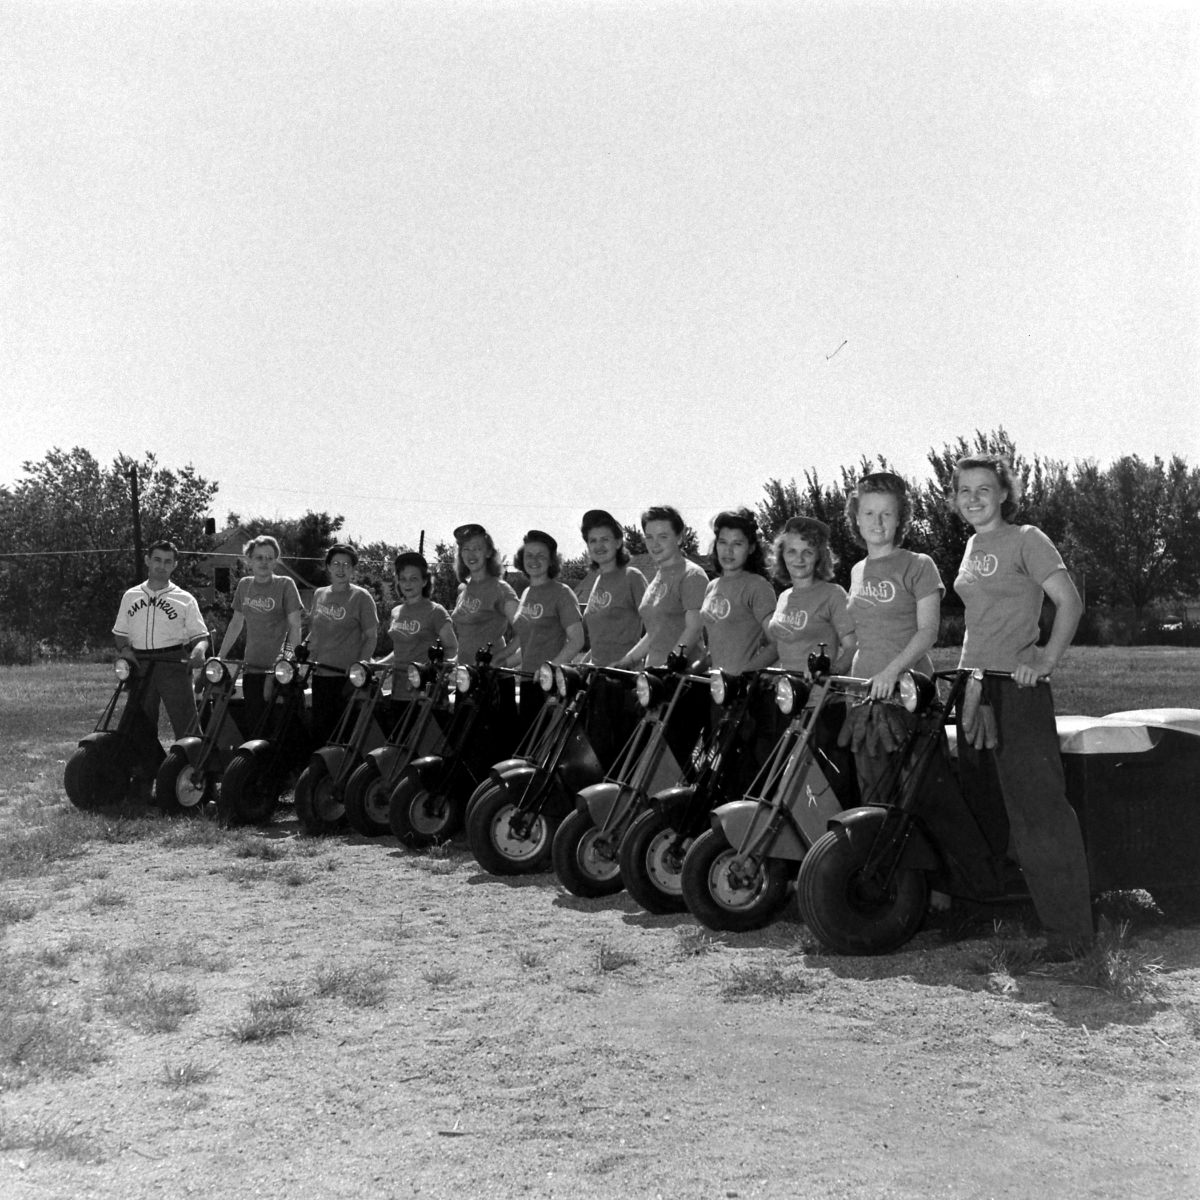 Scooter riders in Nebraska, 1945.